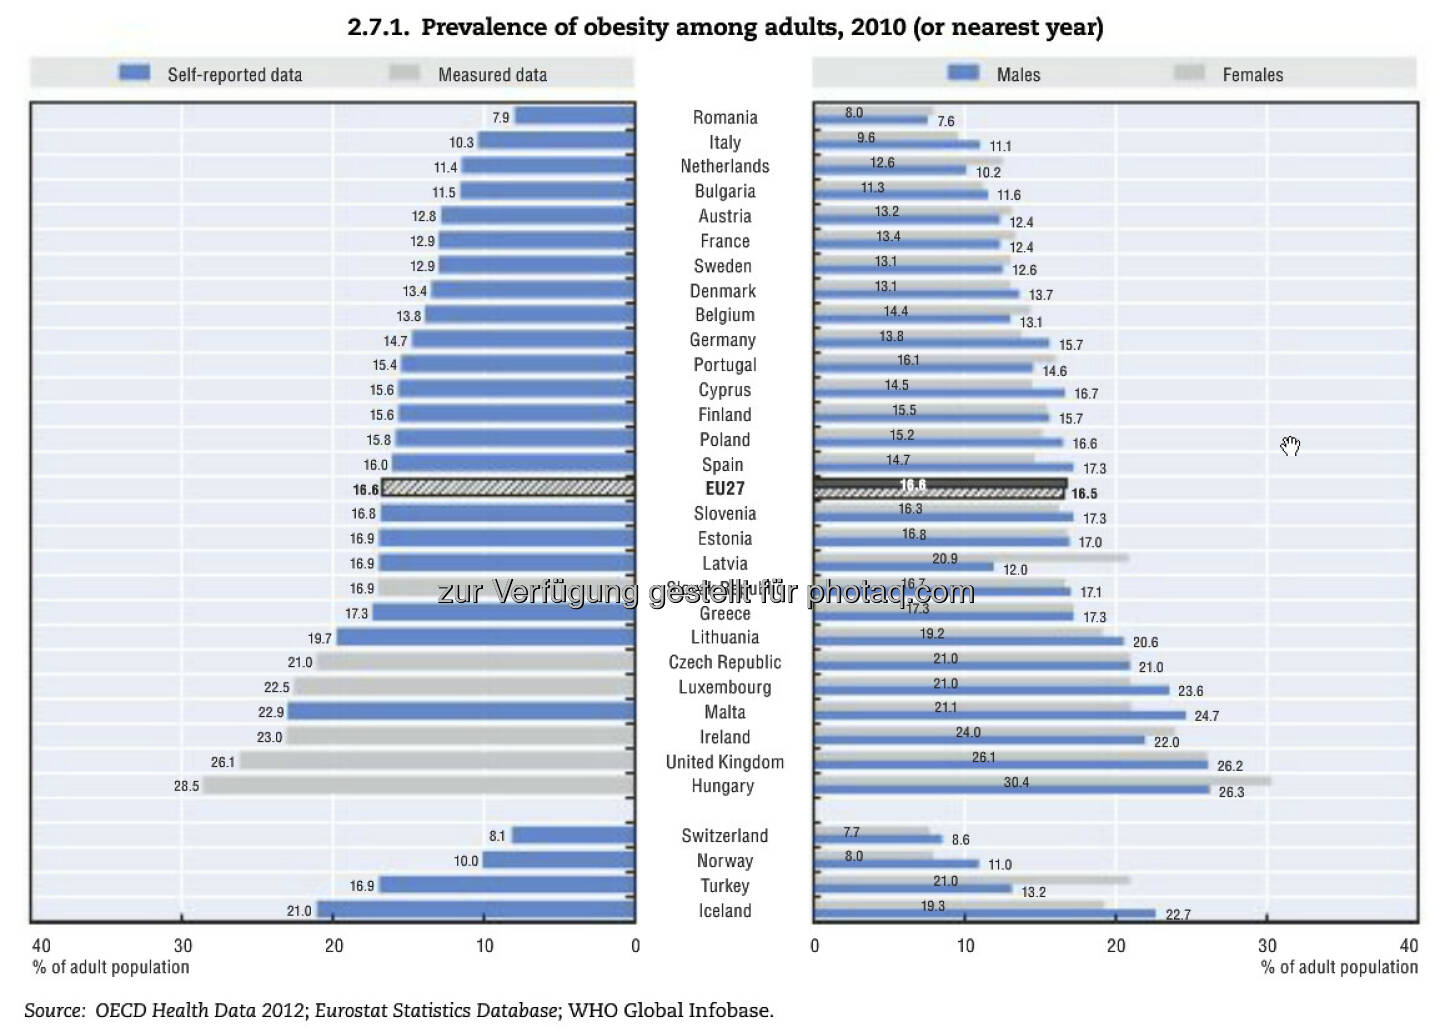 Heavy! Seit 1990 hat sich die Fettleibigkeit in vielen europäischen Ländern verdoppelt. In GB und Ungarn sind mehr als ein Viertel aller Menschen adipös. Besonders betroffen: benachteiligte soziale Gruppen.
Weitere Zahlen und Erläuterungen unter: http://bit.ly/15QmhSW
